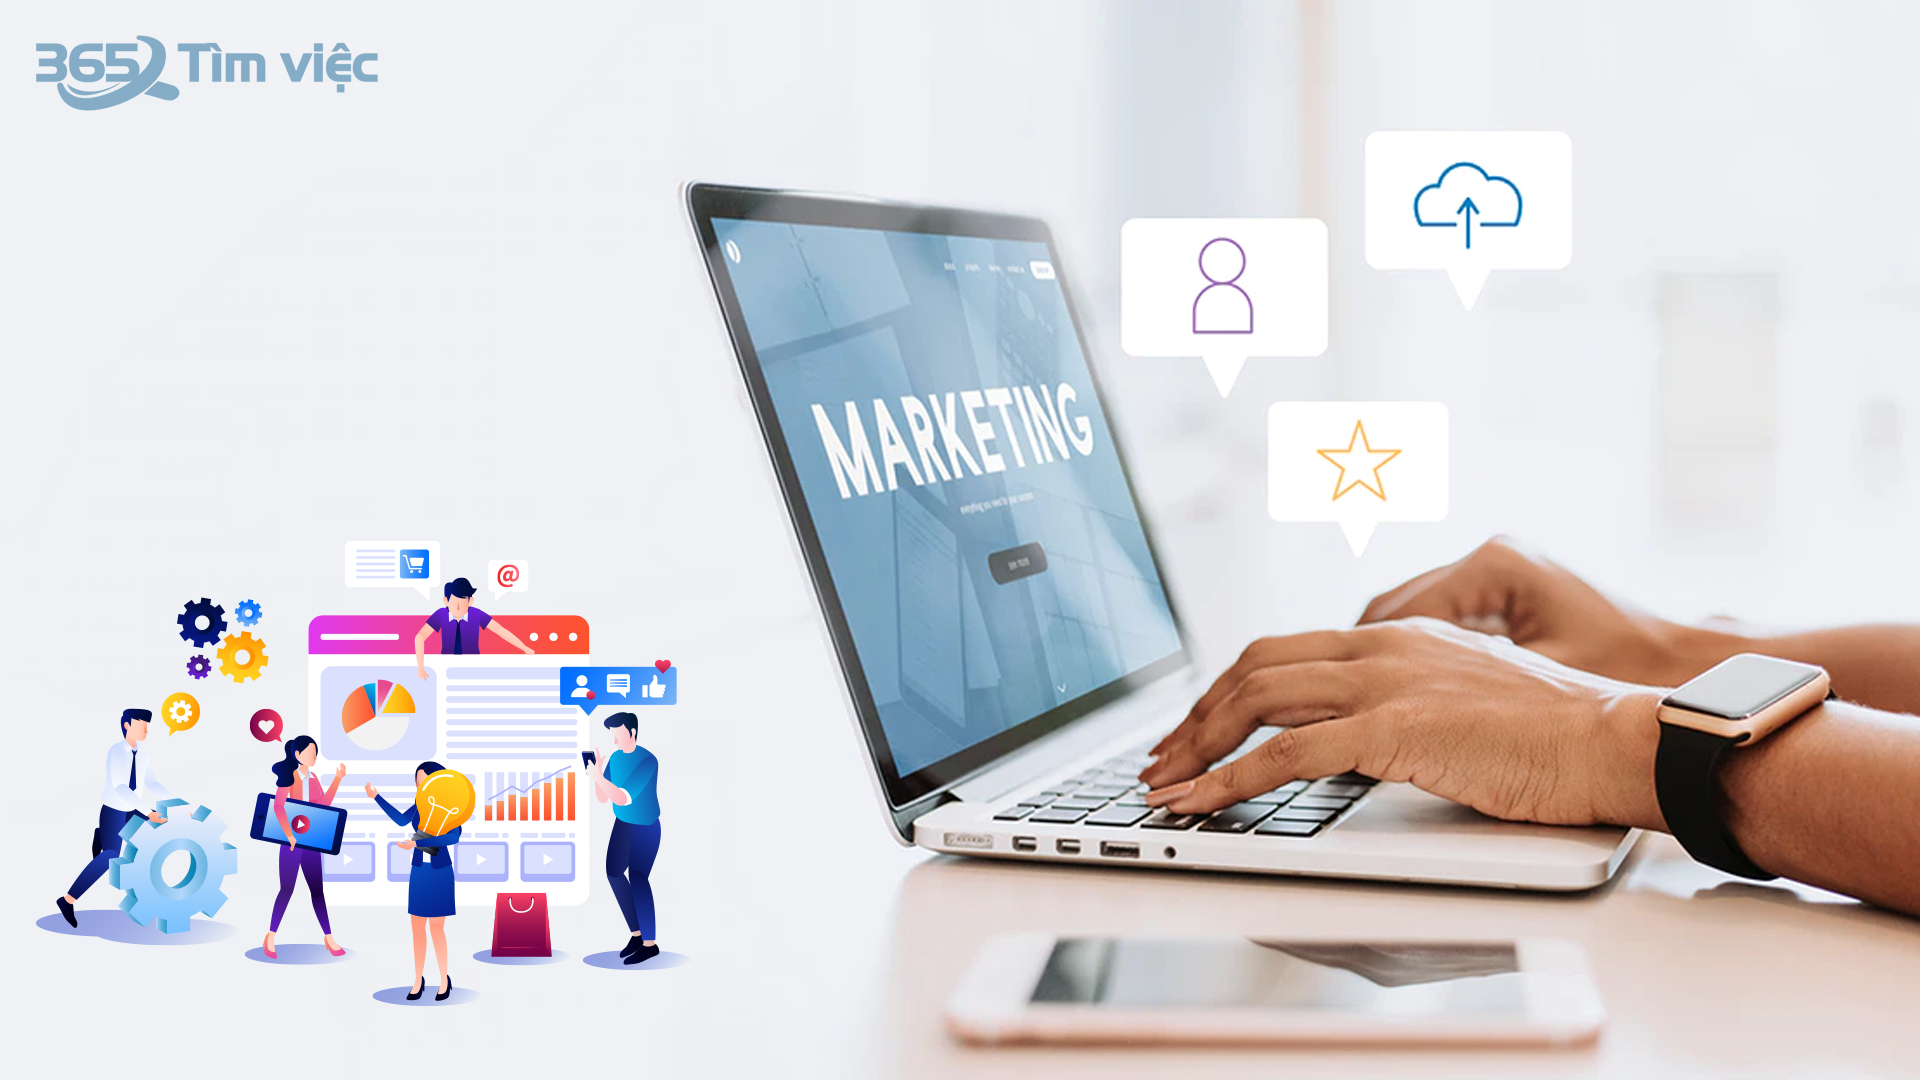 Digital Marketing - công việc rất quan trọng đối với doanh nghiệp